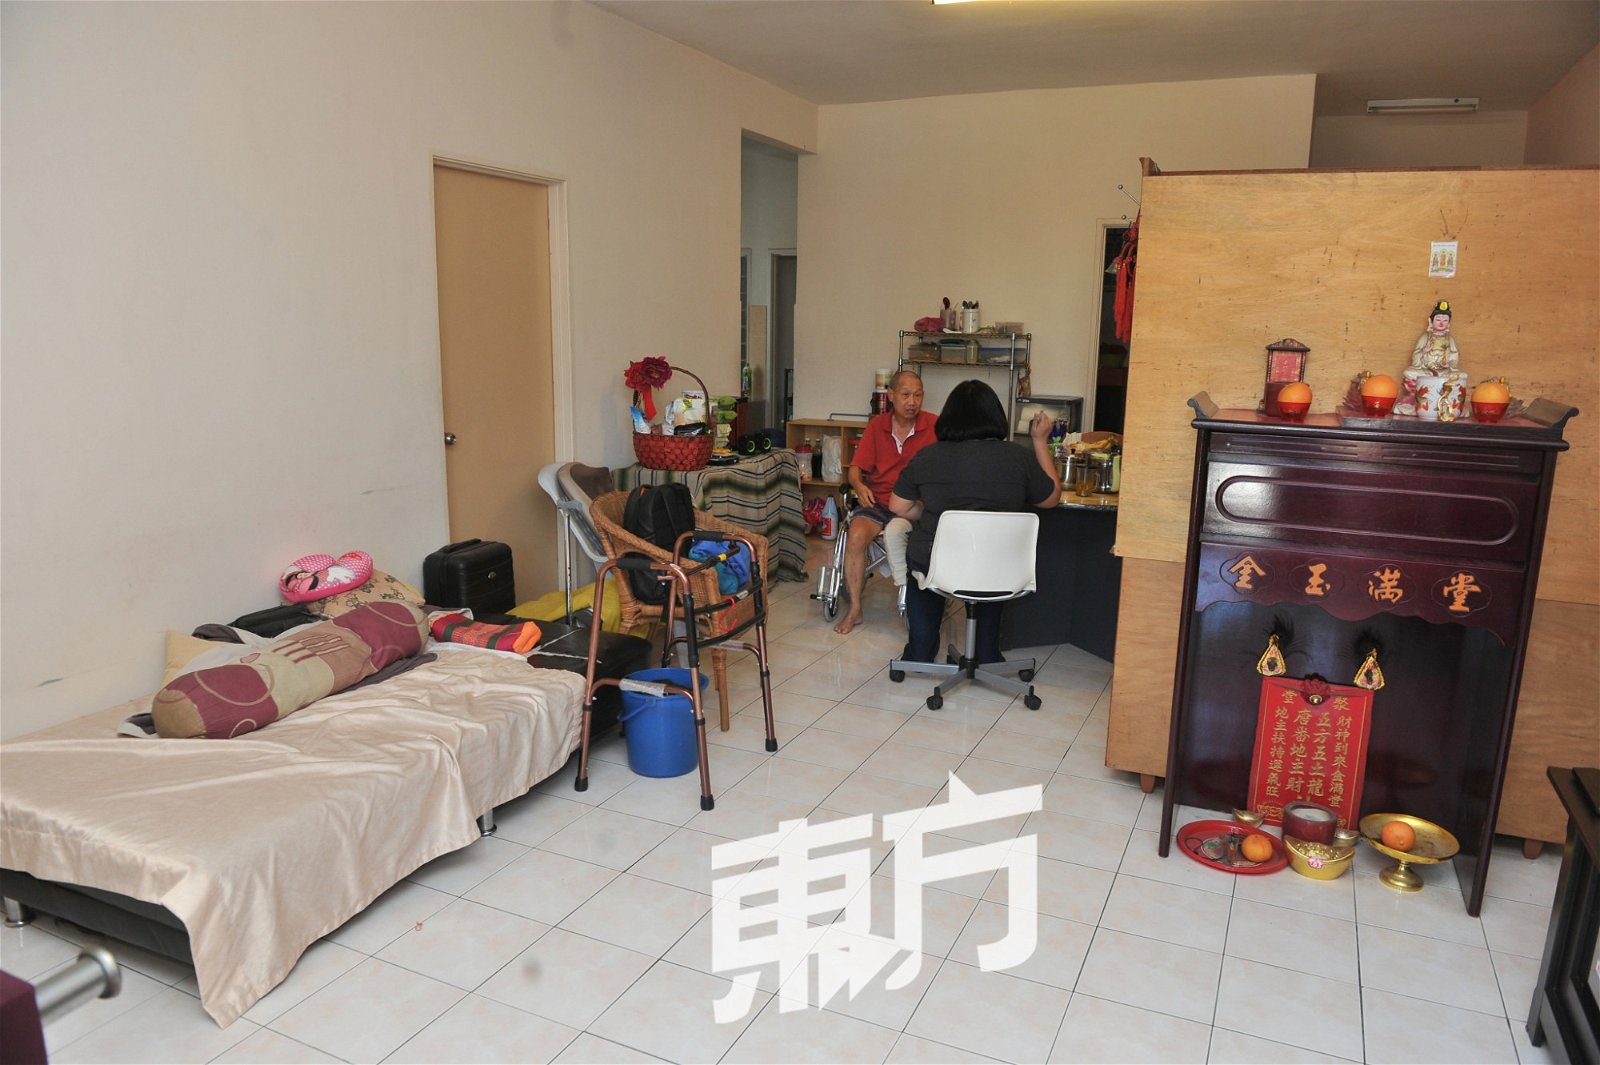 李荣富一家人目前居住在安邦一所公寓，并正在申请迁入人民组屋，以减低房租开销。